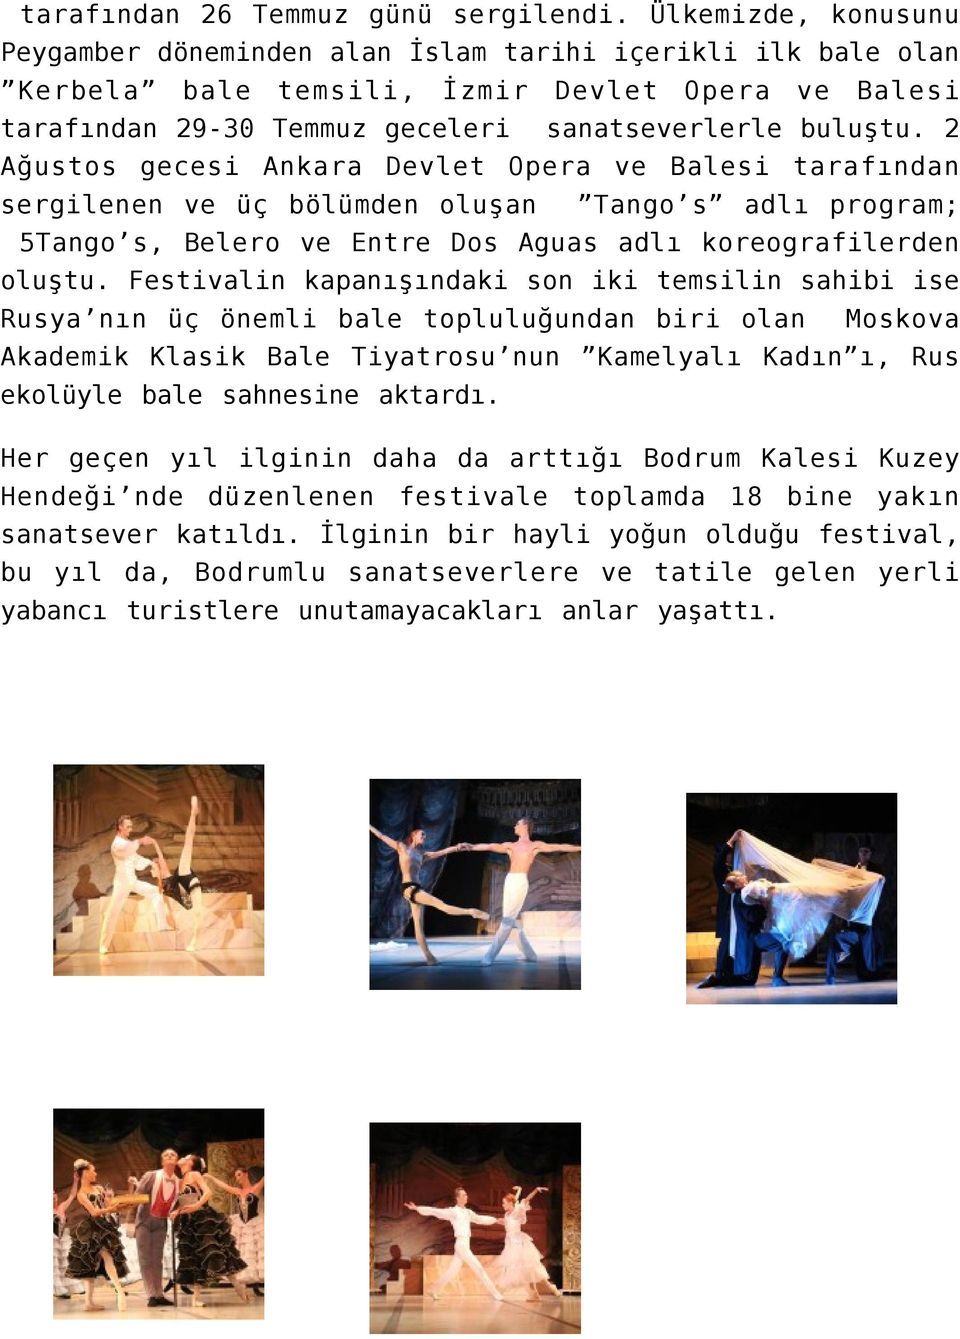 2 Ağustos gecesi Ankara Devlet Opera ve Balesi tarafından sergilenen ve üç bölümden oluşan Tango s adlı program; 5Tango s, Belero ve Entre Dos Aguas adlı koreografilerden oluştu.